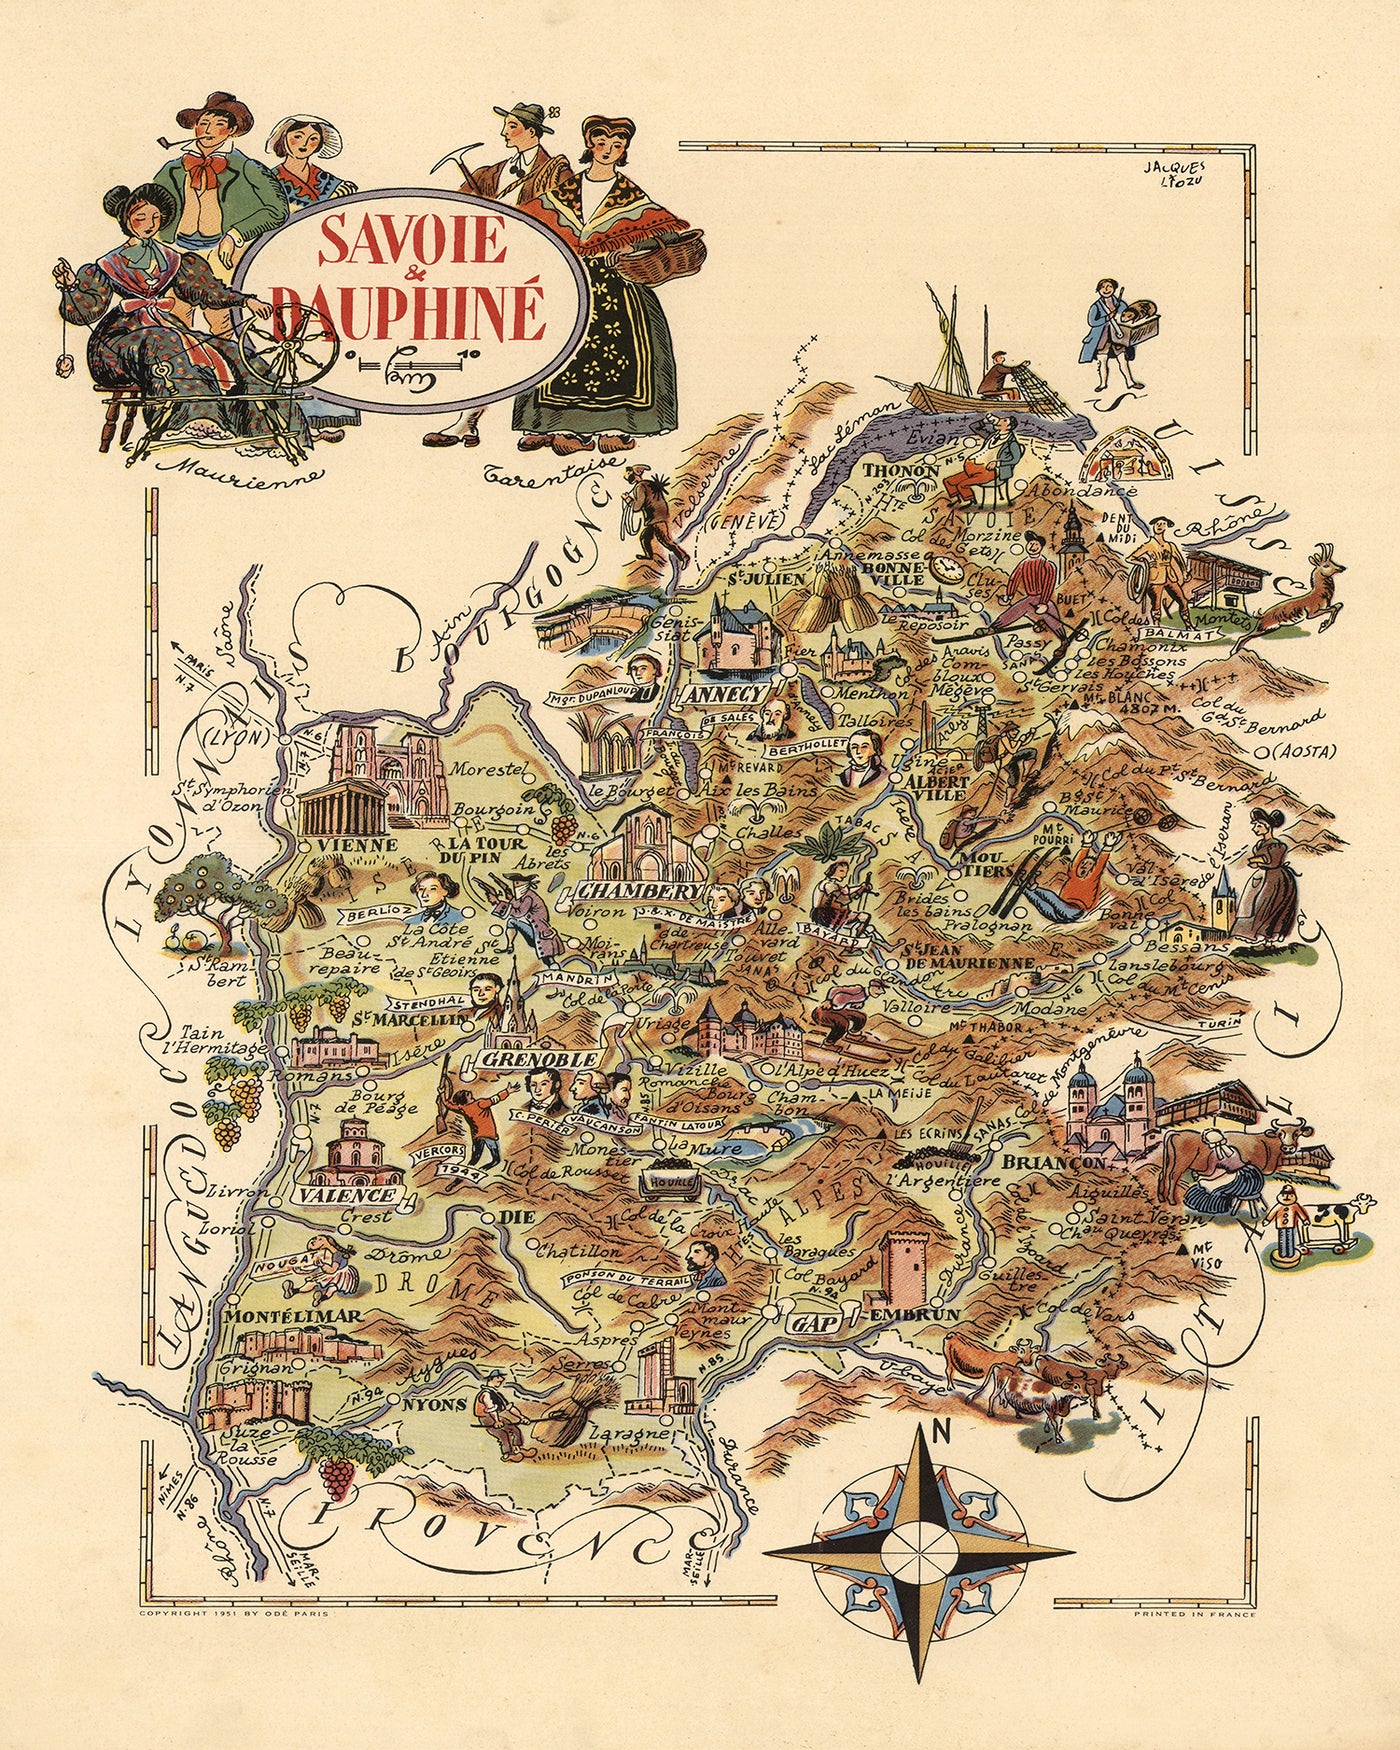 Ancienne carte de Savoie & Dauphine, France par Jacques Liozu, 1951 : Alpes, Grenoble, Chambéry, Annecy